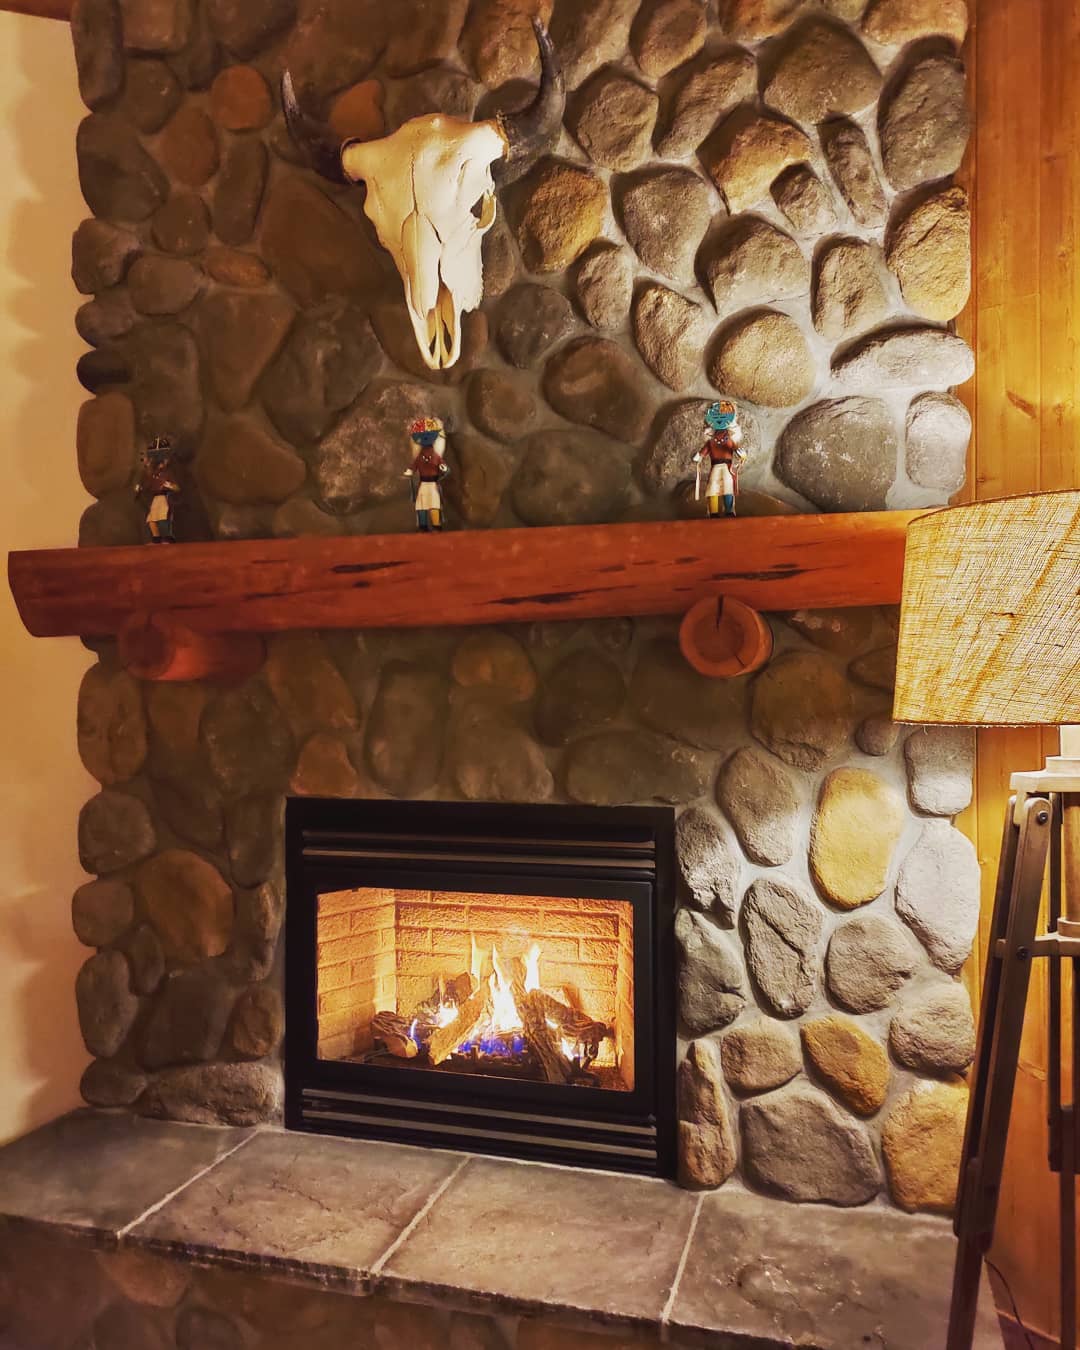 冬の夜の愉しみ方。海外生活の思い出に浸りながら、揺れる炎をつまみに1杯どうですか。 アイルズハウス施工例 #fireplace #暖炉